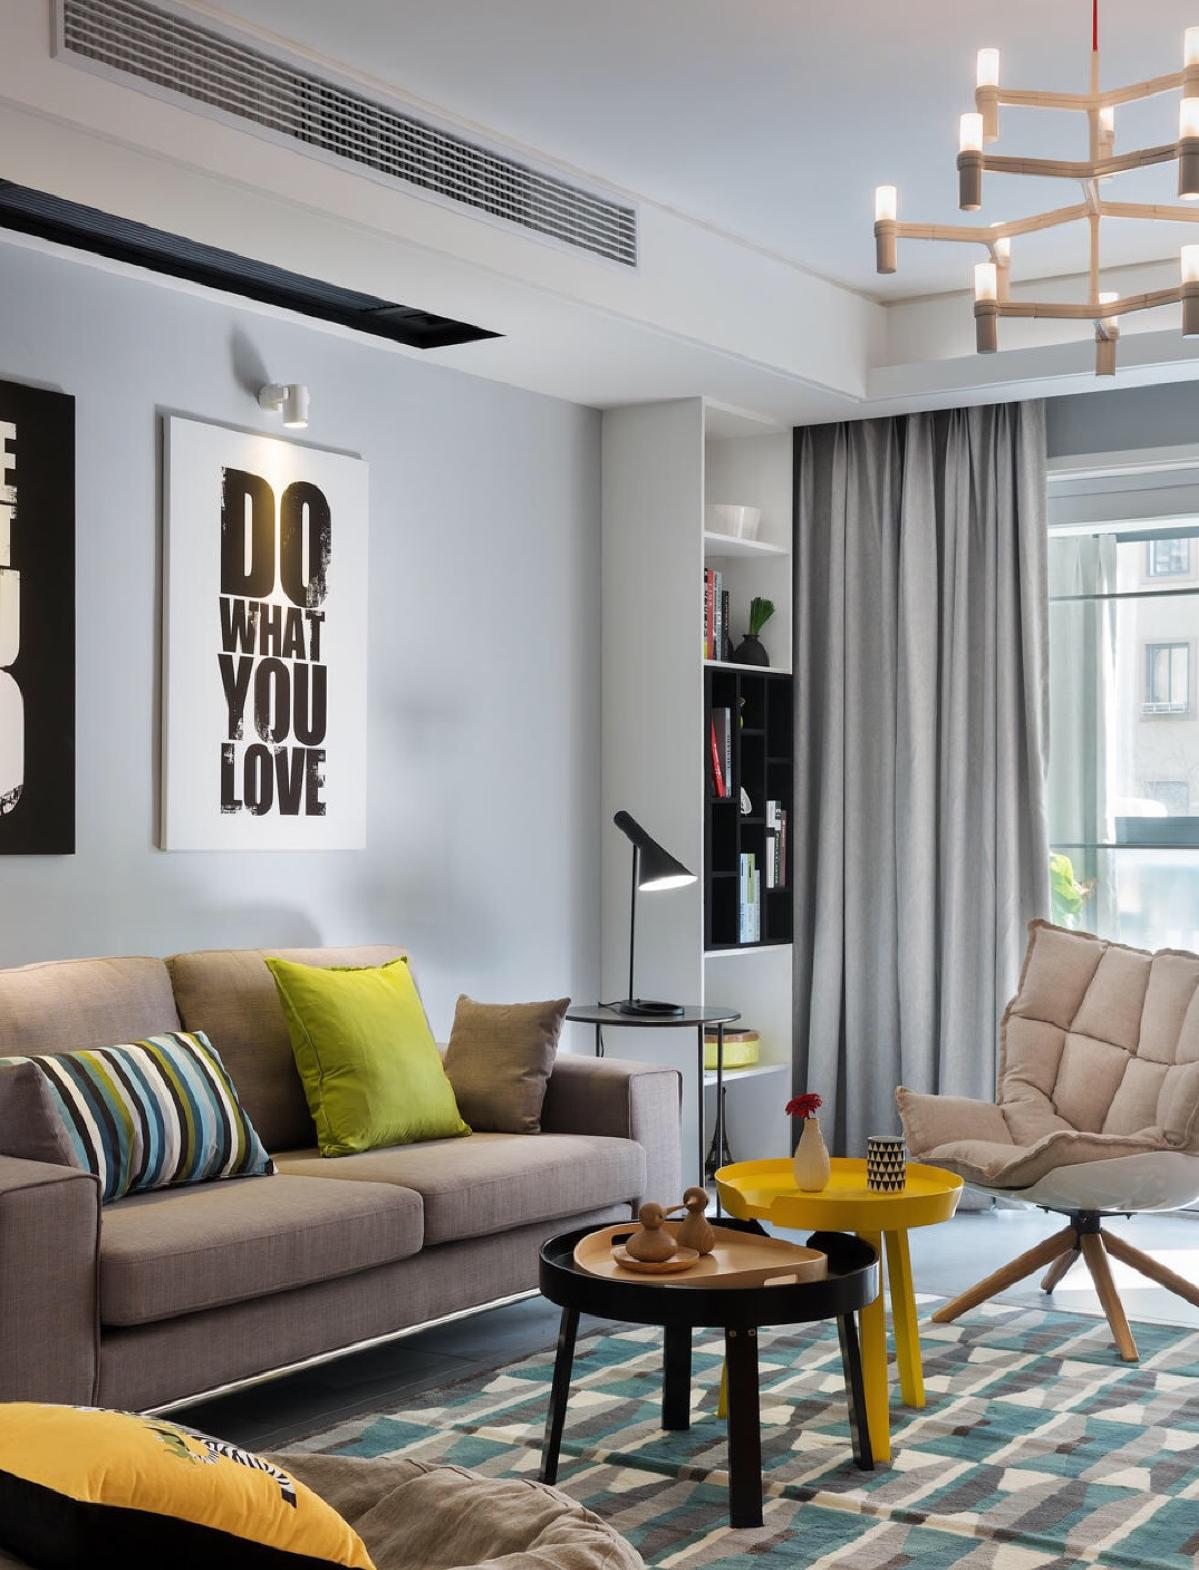 三居 北欧 小资 客厅图片来自日升装饰公司在130平米北欧温馨舒适的家的分享